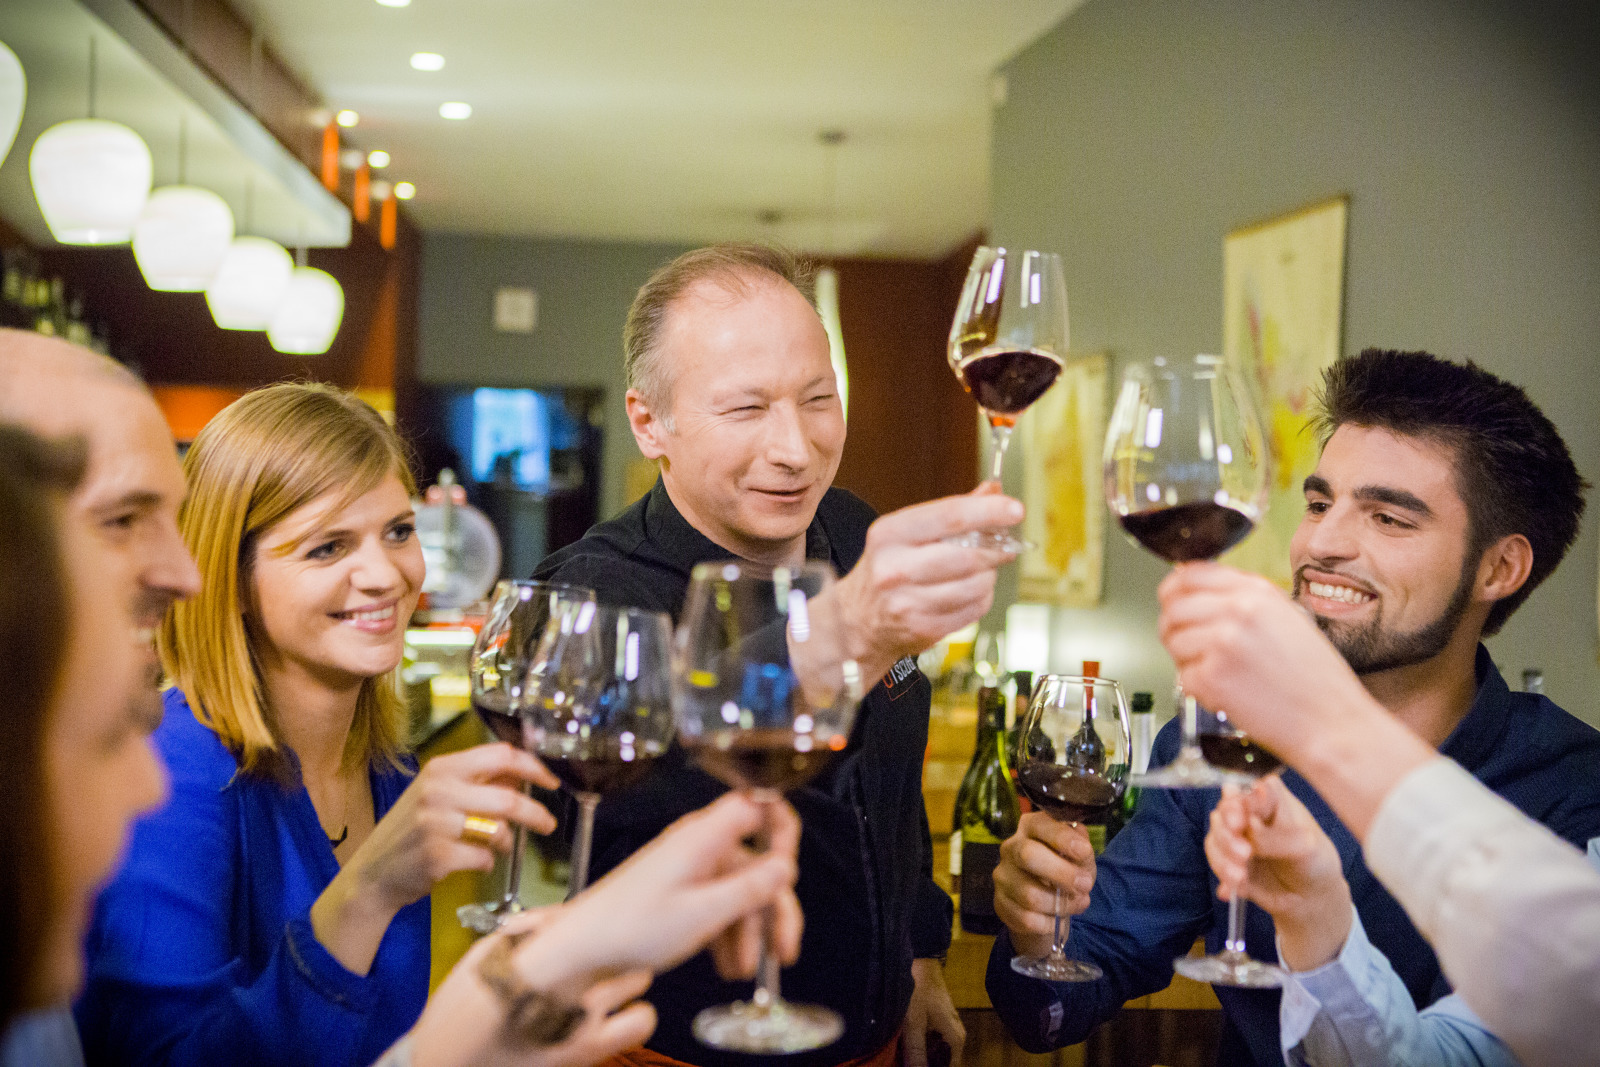 Un groupe participe à une dégustation de vins au bar à vins Vino Vino situé à Namur